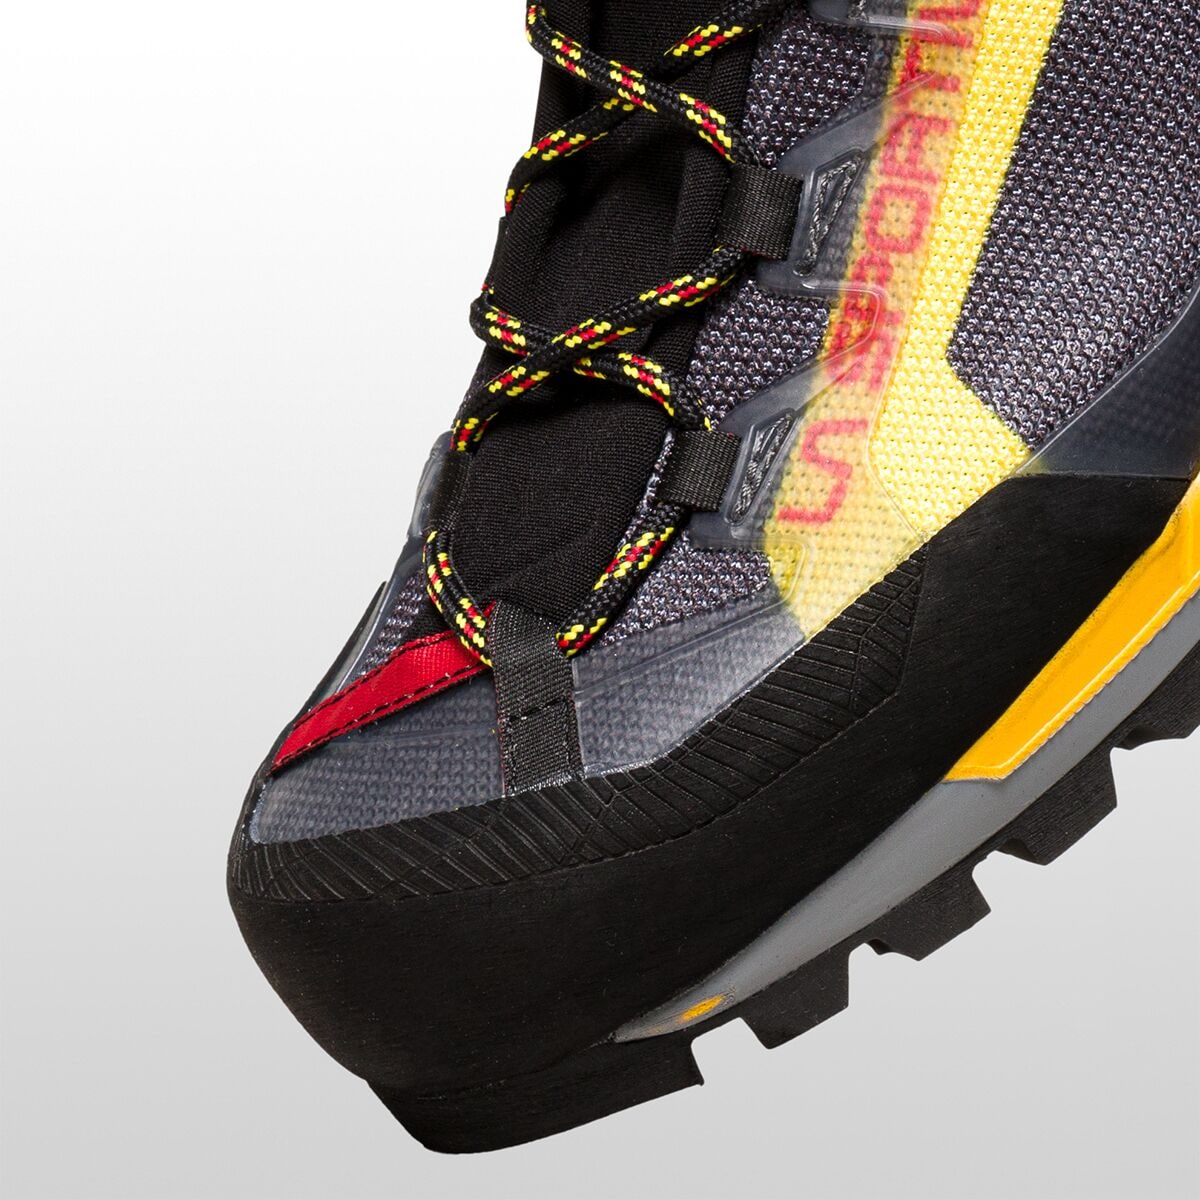 La Sportiva Trango Tech GTX Mountaineering Boot - Men's - Footwear